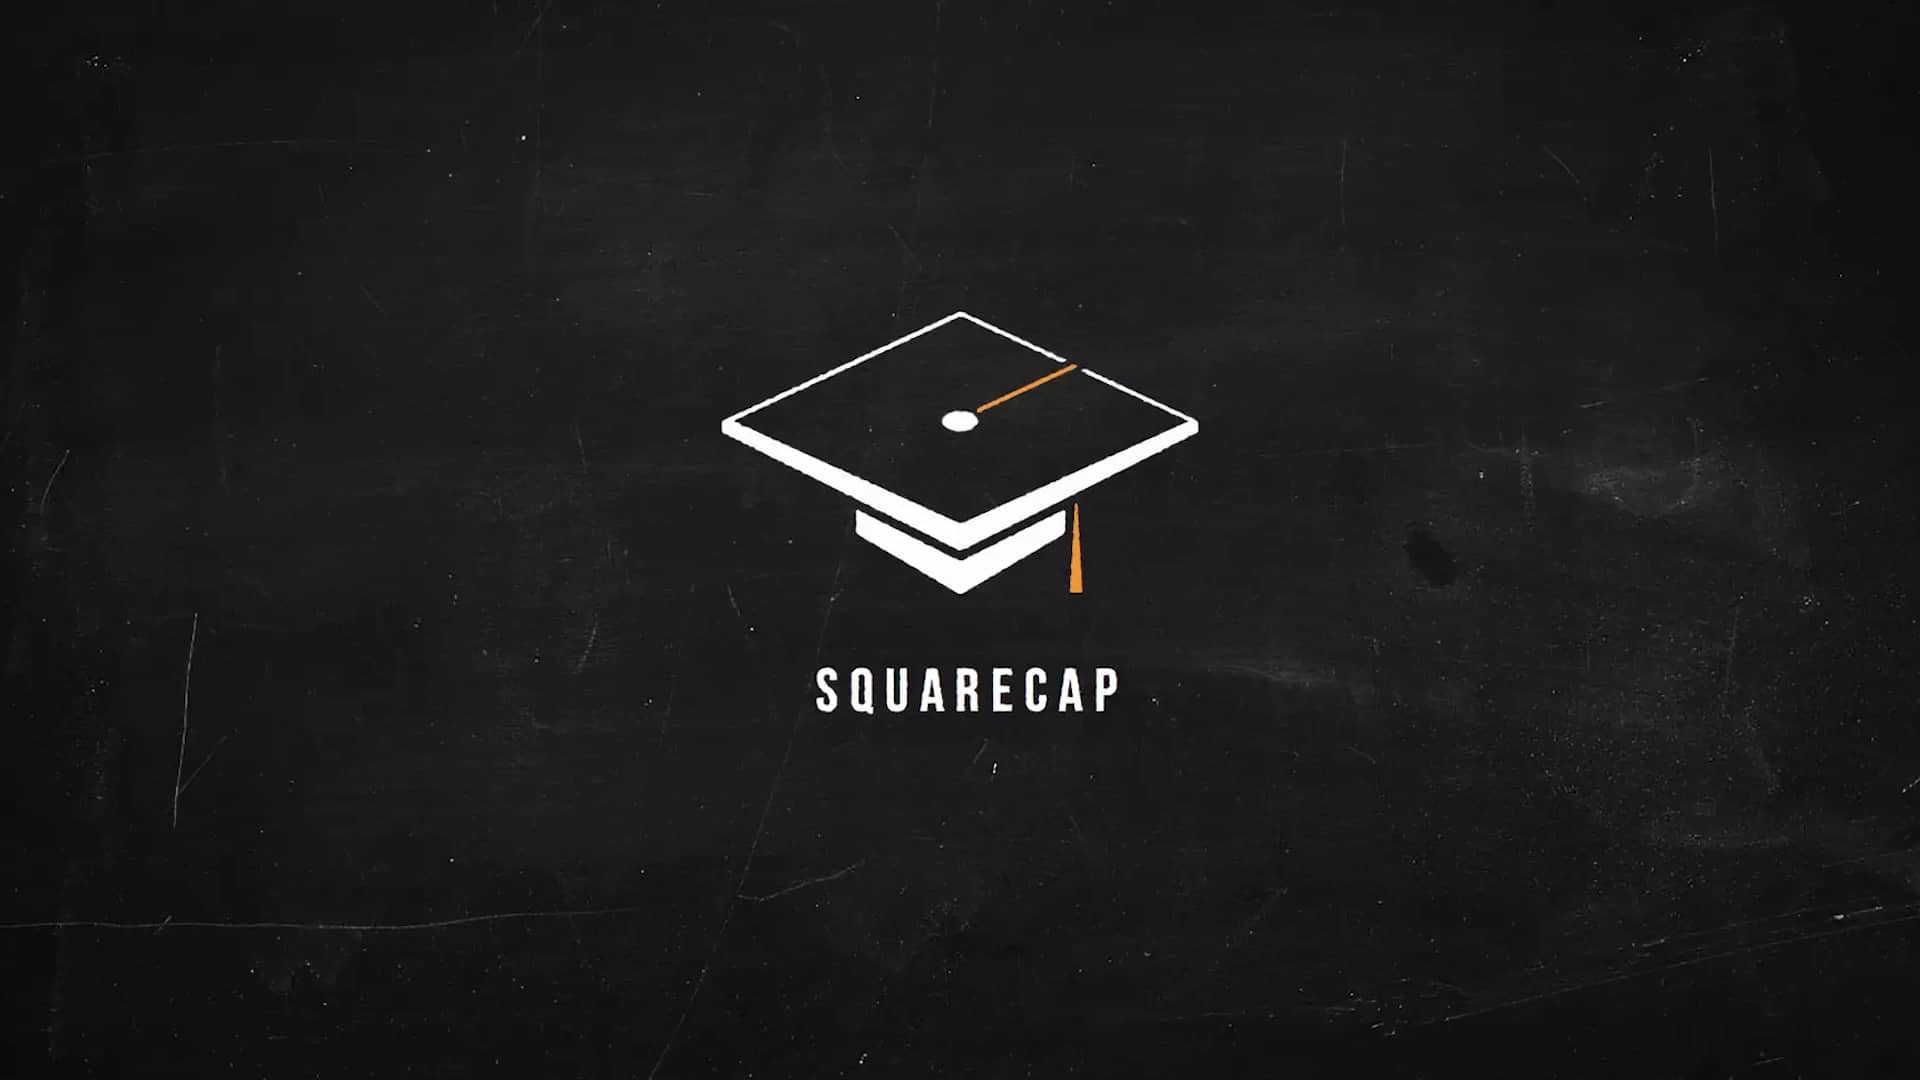 Square cap logo